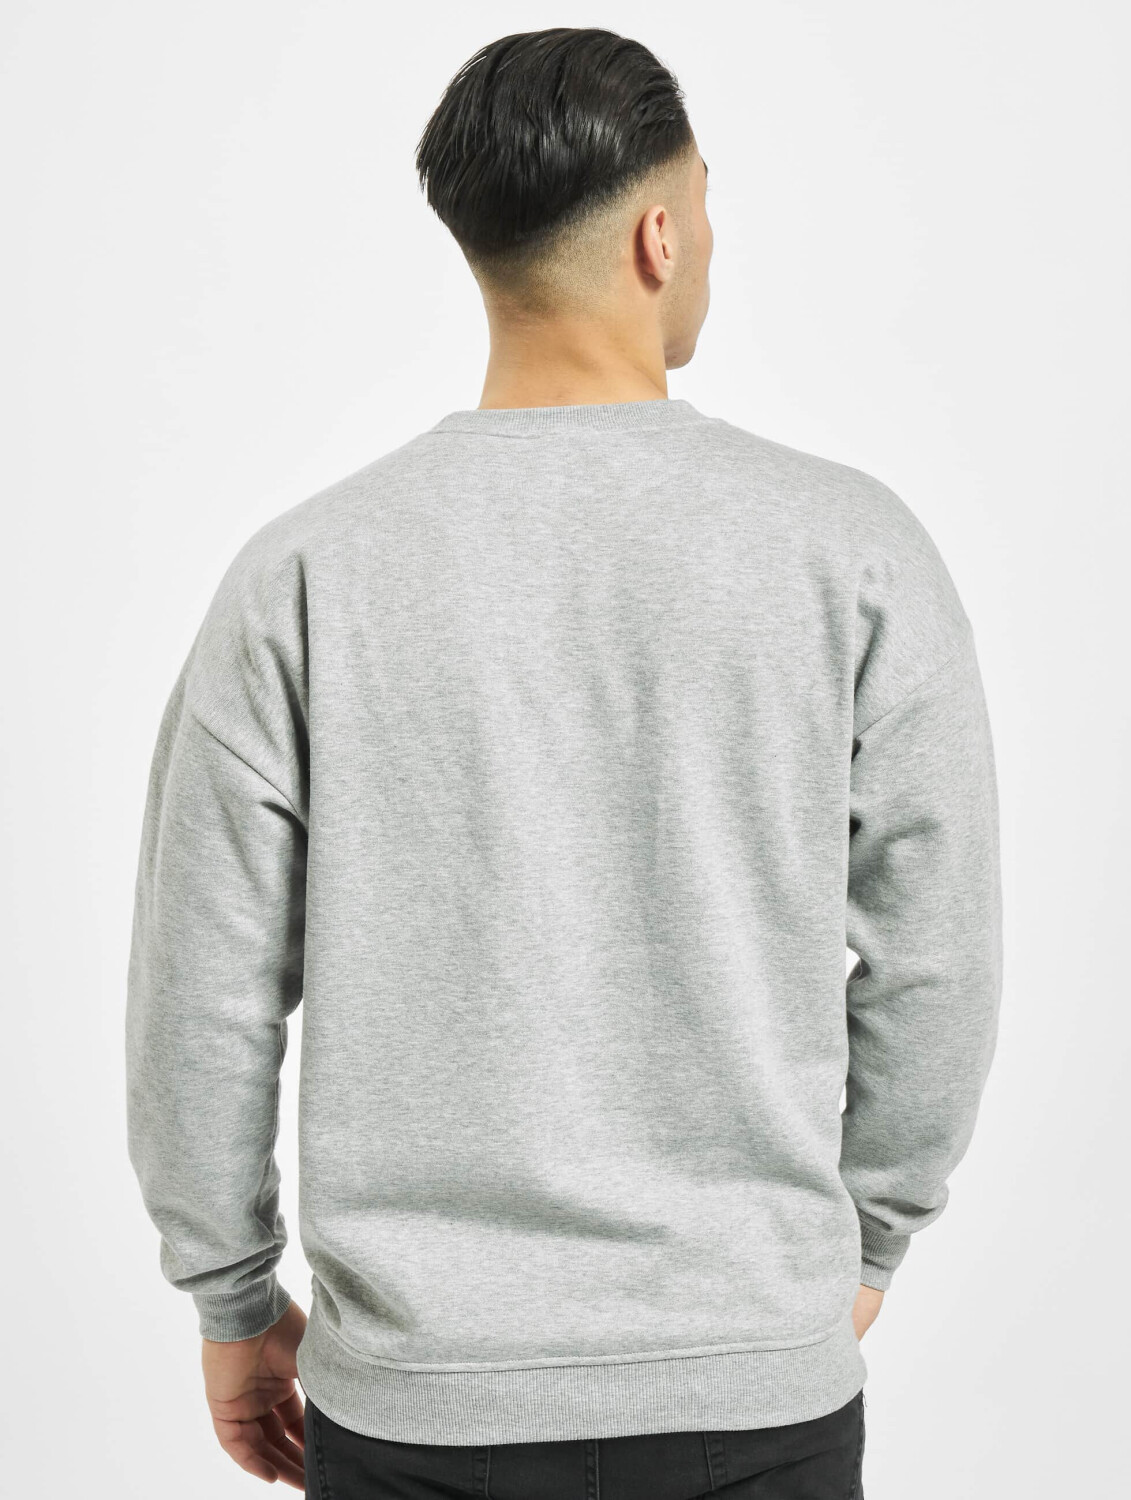 Sweatshirt Preisvergleich (TB1591GRY) | Urban 22,99 € grey ab Classics Camden bei